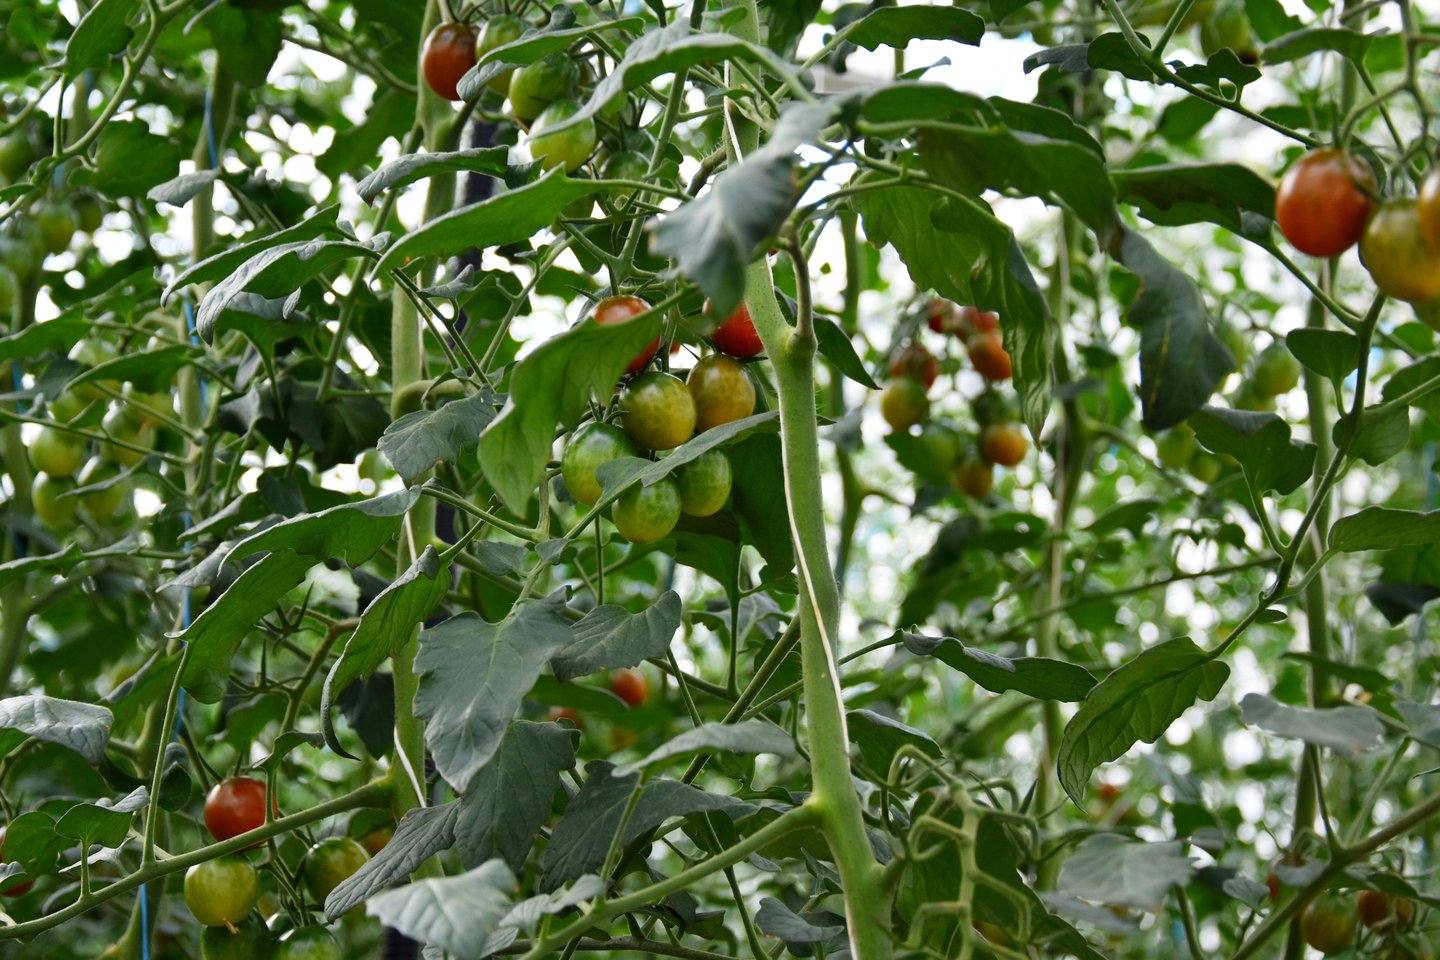 Šiltnamiai, kuriuose auginami agurkai, pomidorai bei braškės, užima 10 hektarų.